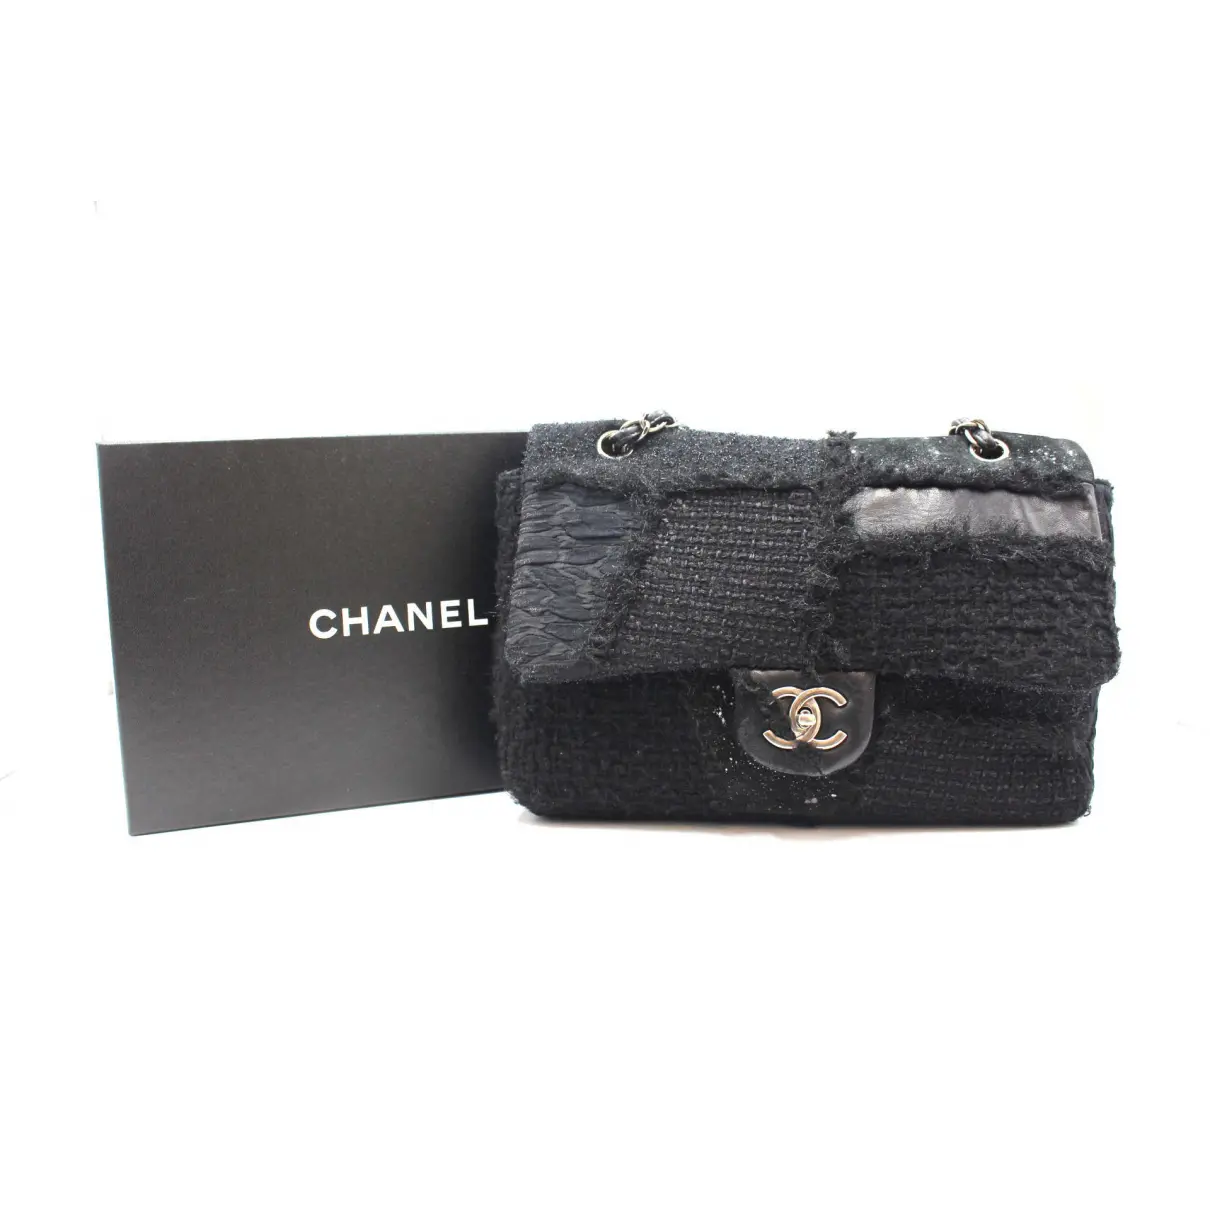 2.55 tweed handbag Chanel